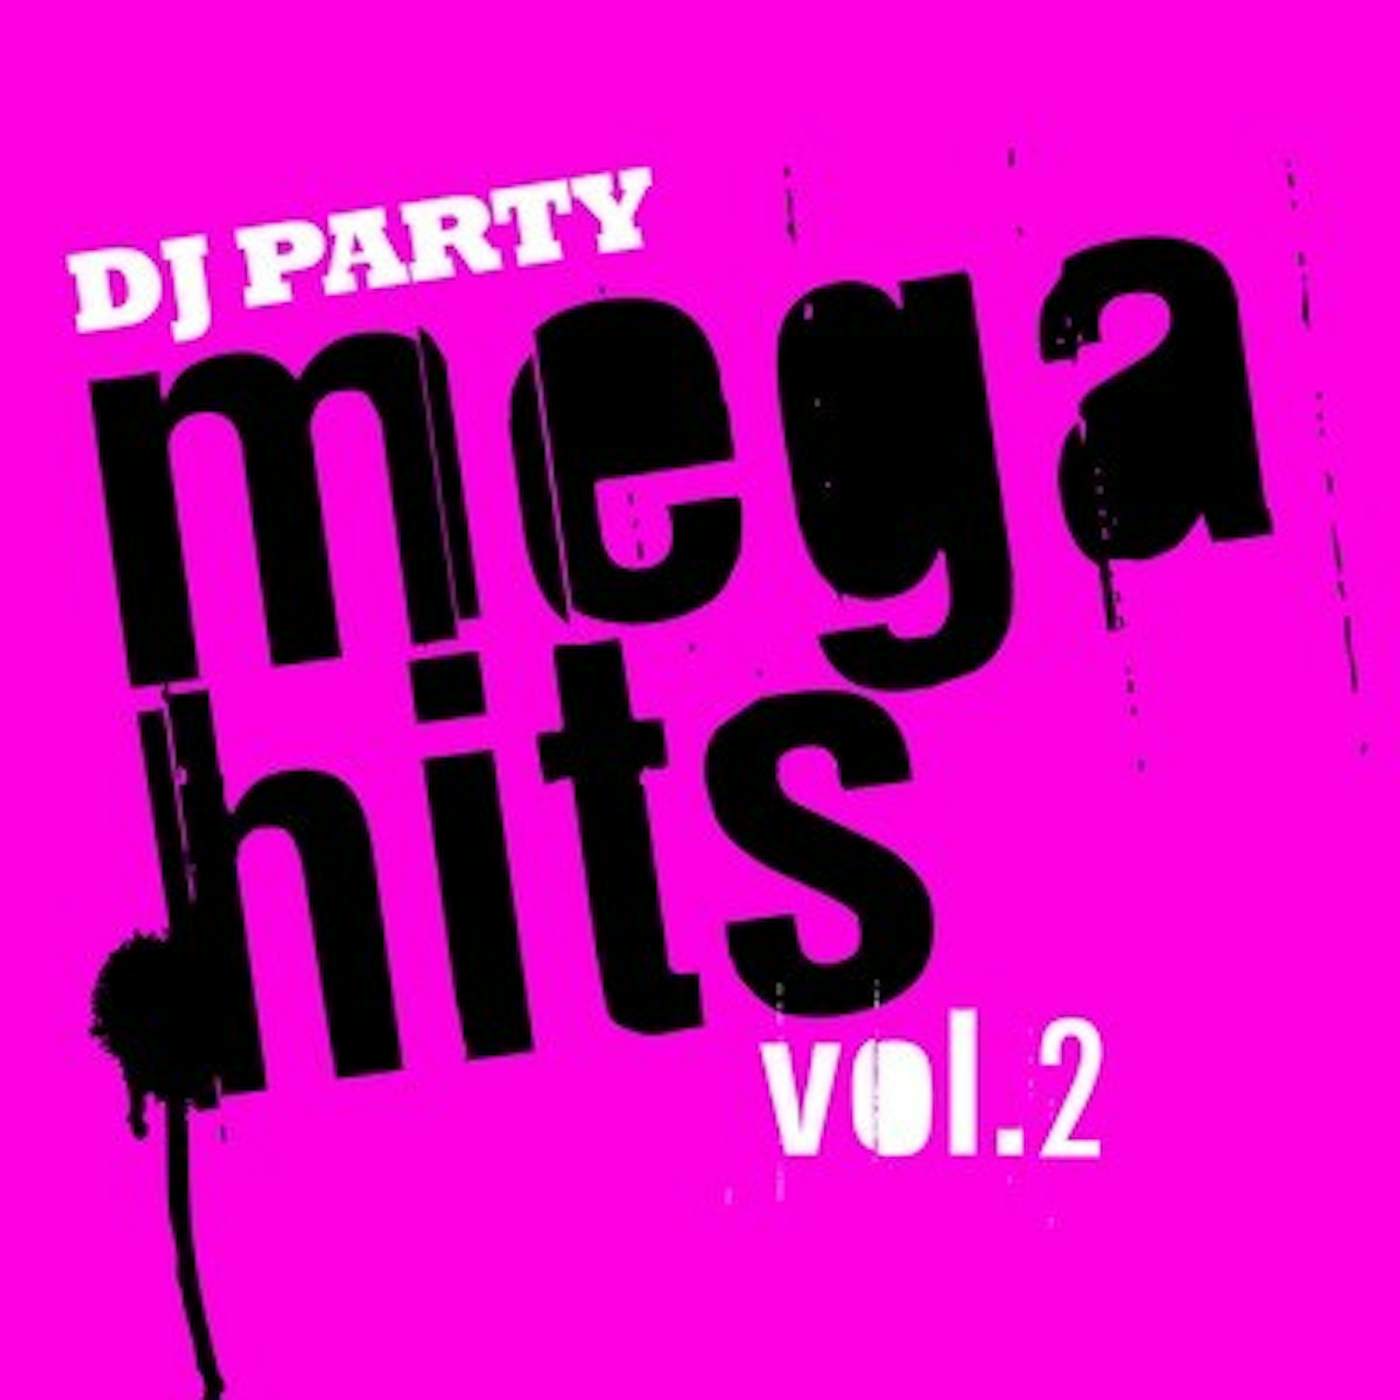 DJ Party MEGA HITS VOL. 2 CD